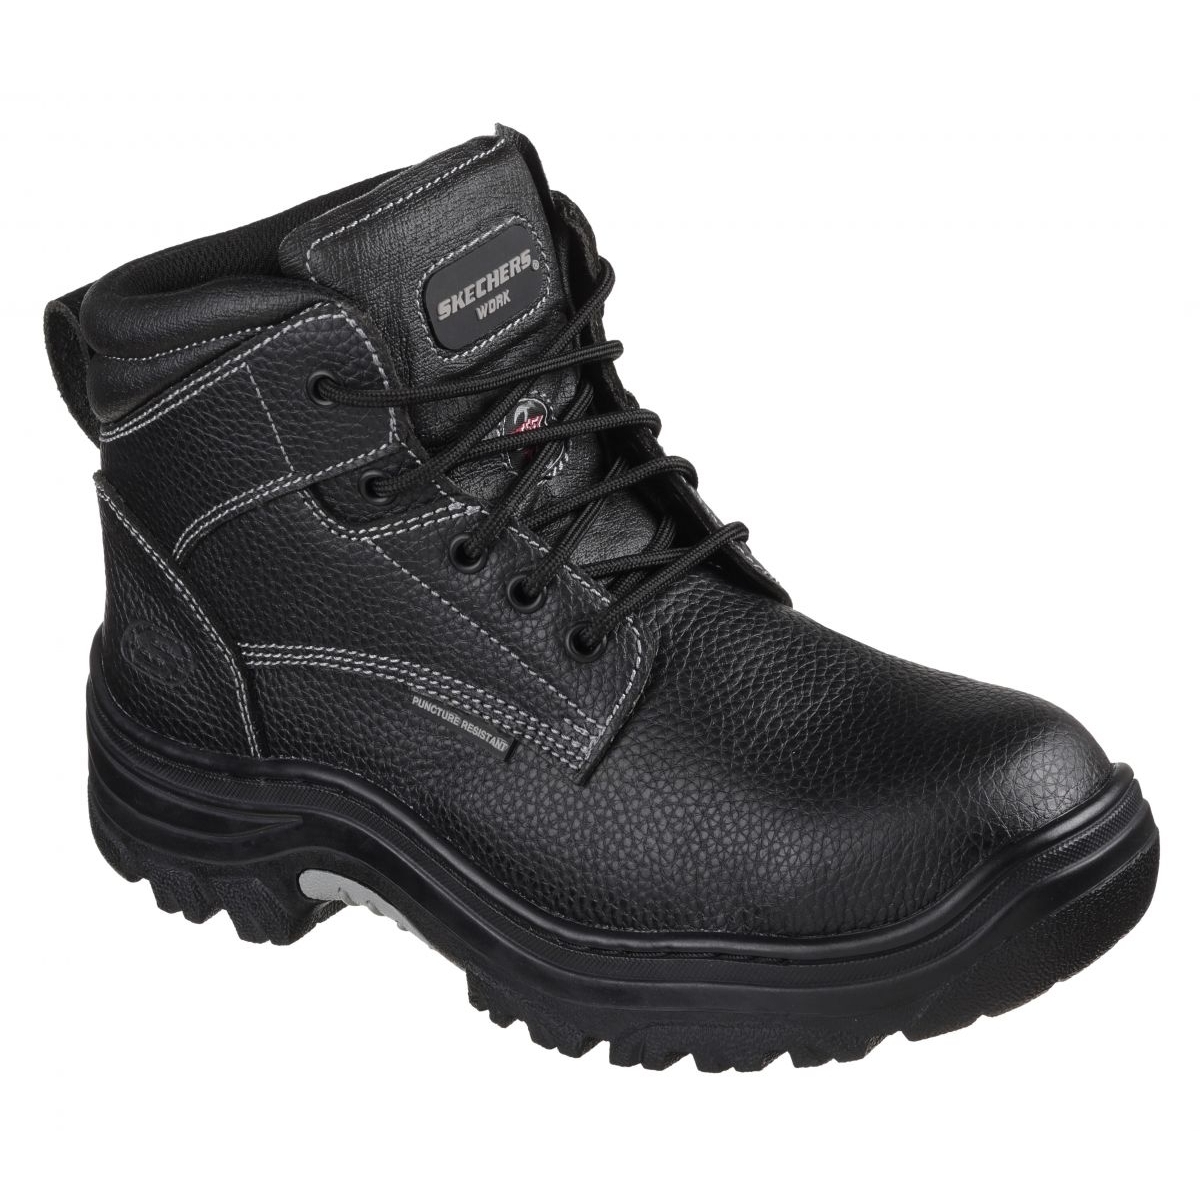 Skechers Men's Burgin-Tarlac Industrial Boot Varies BLACK - BLACK, 10.5 Wide